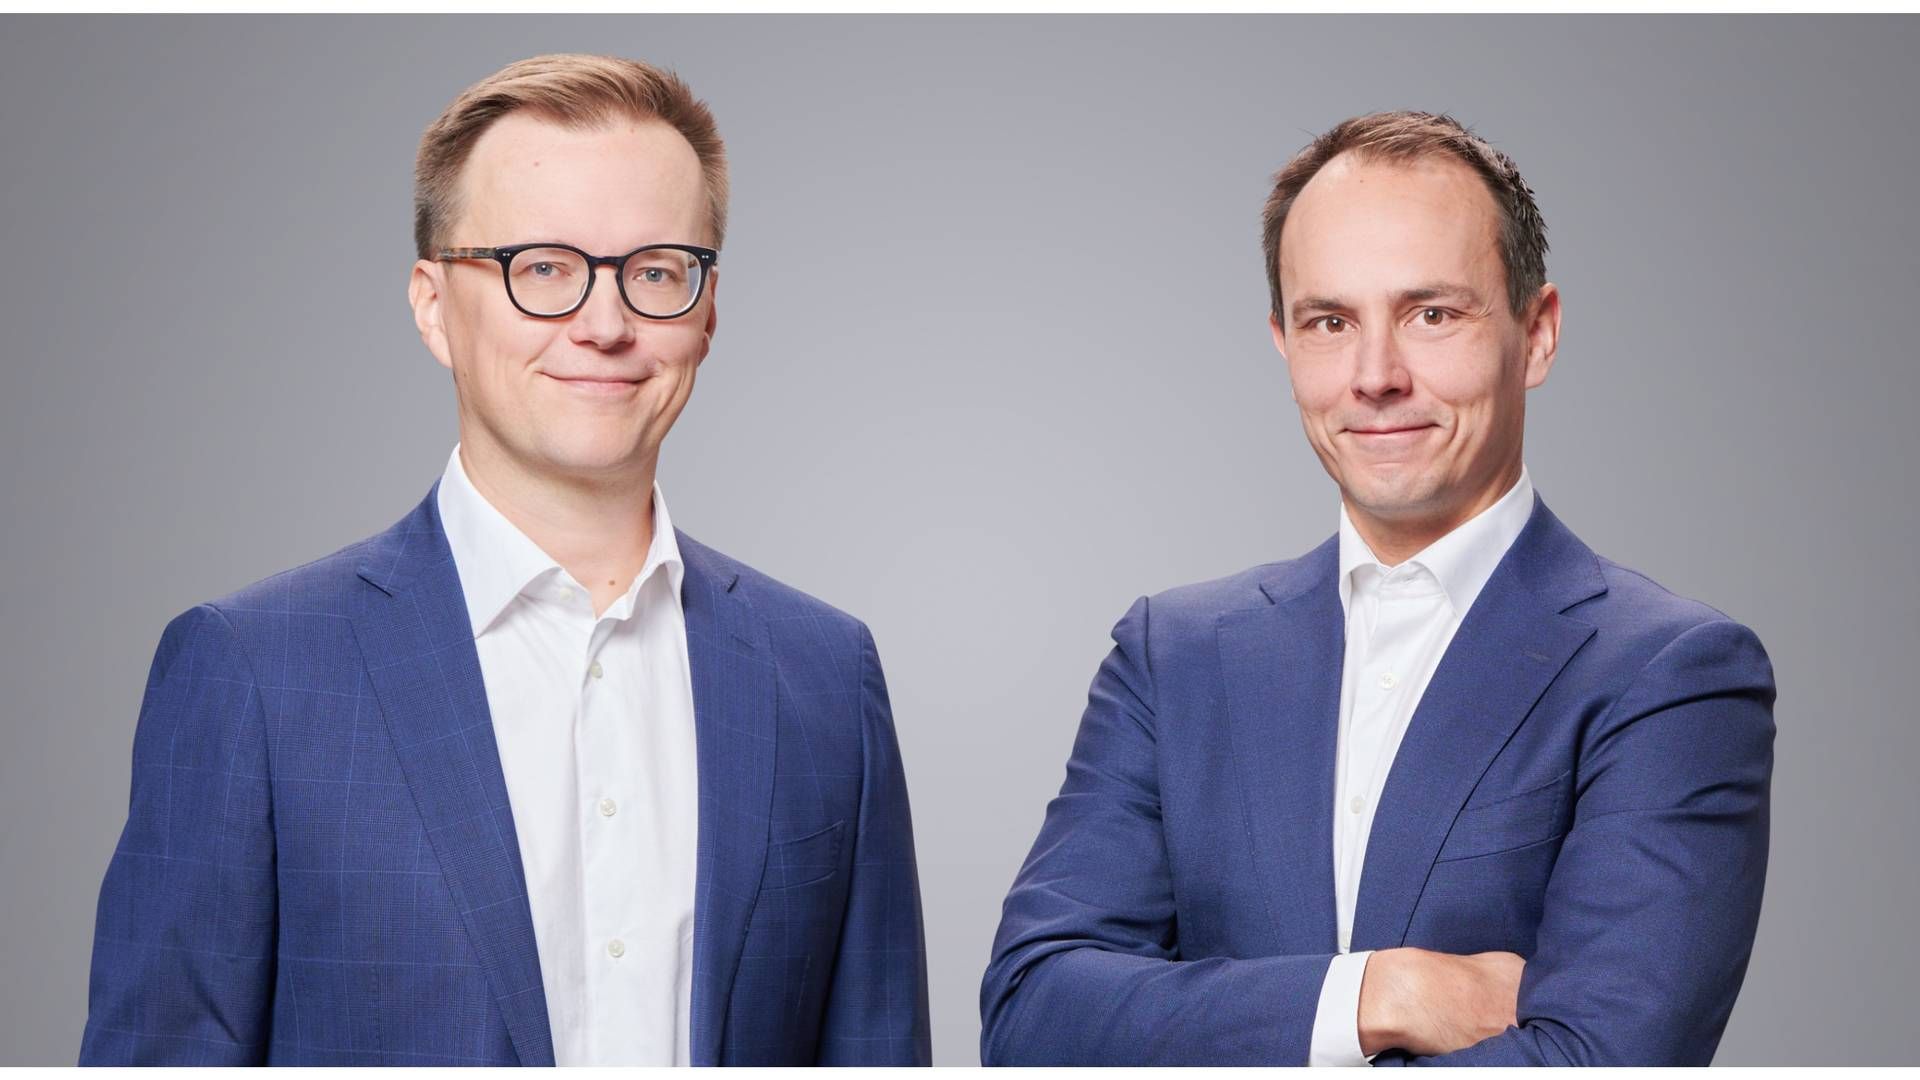 Jan Brännback (l.) and Janne Lähdesmäki (r.), portfolio managers at Schroders. | Photo: PR Schroders.